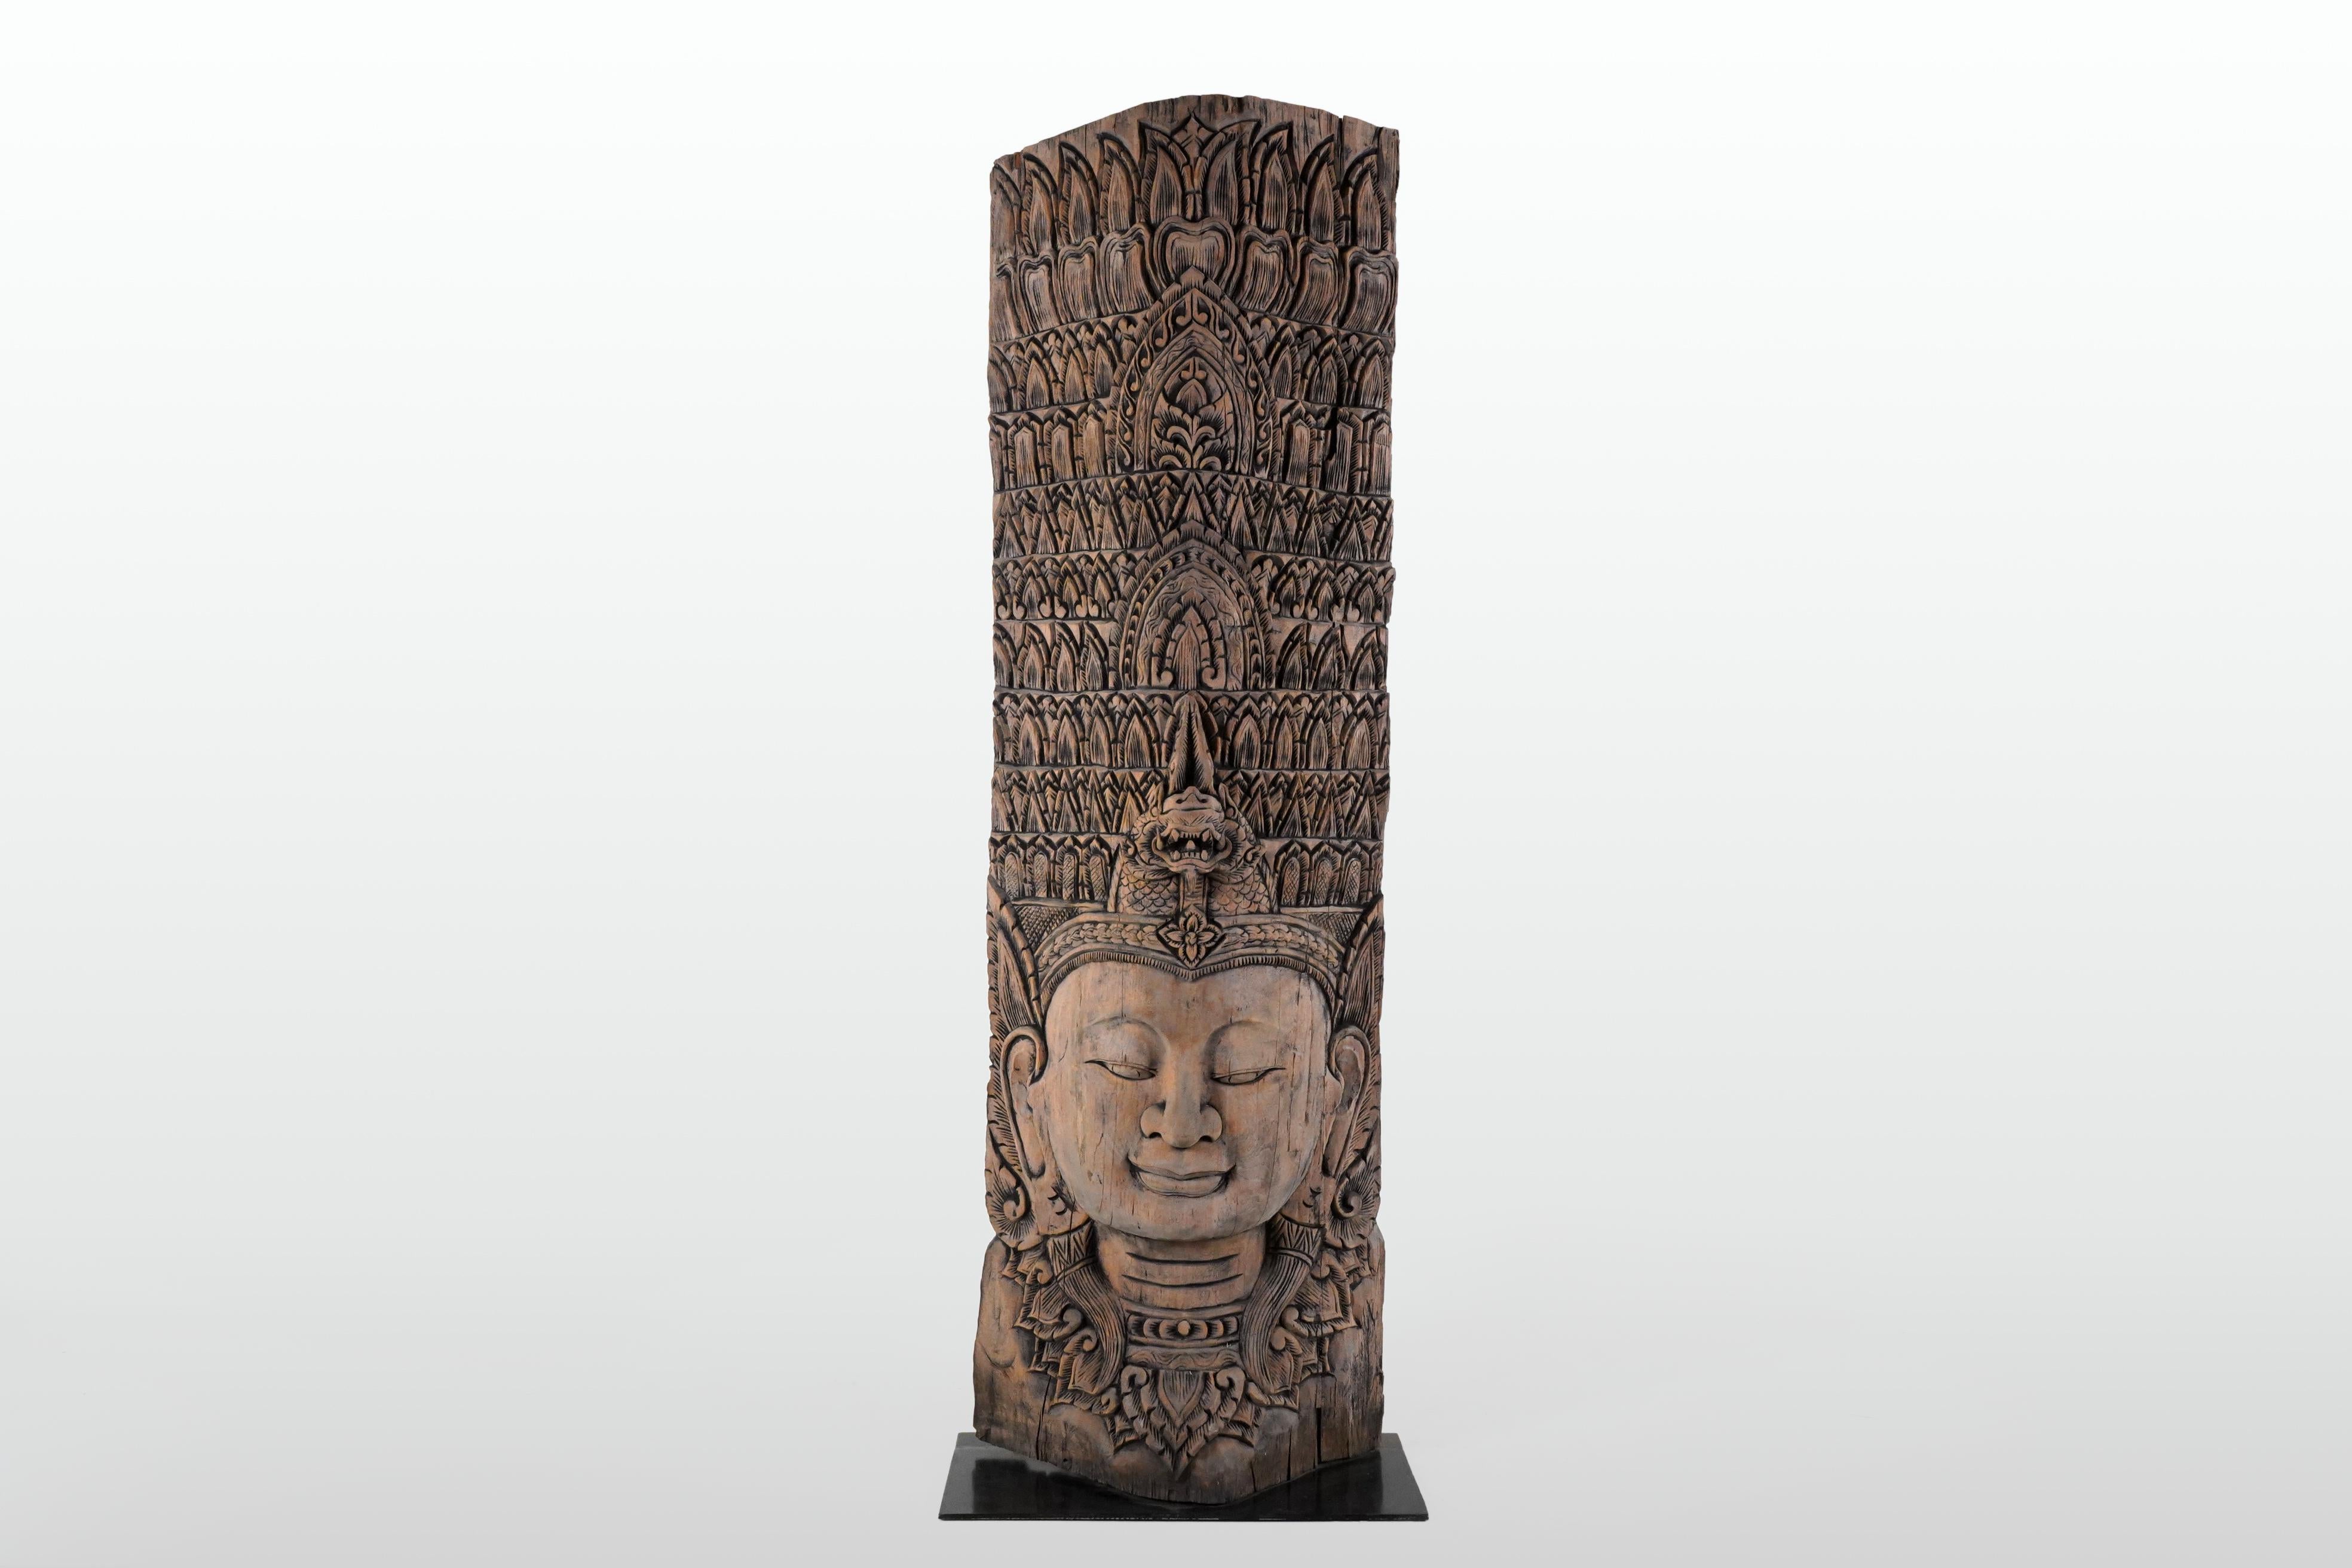 Récemment sculpté dans du teck recyclé, ce buste prend la forme d'une Apsara. Issues des mythologies hindoue et bouddhiste, les Apsaras sont des esprits féminins des nuages et des eaux. Elles sont également appelées 